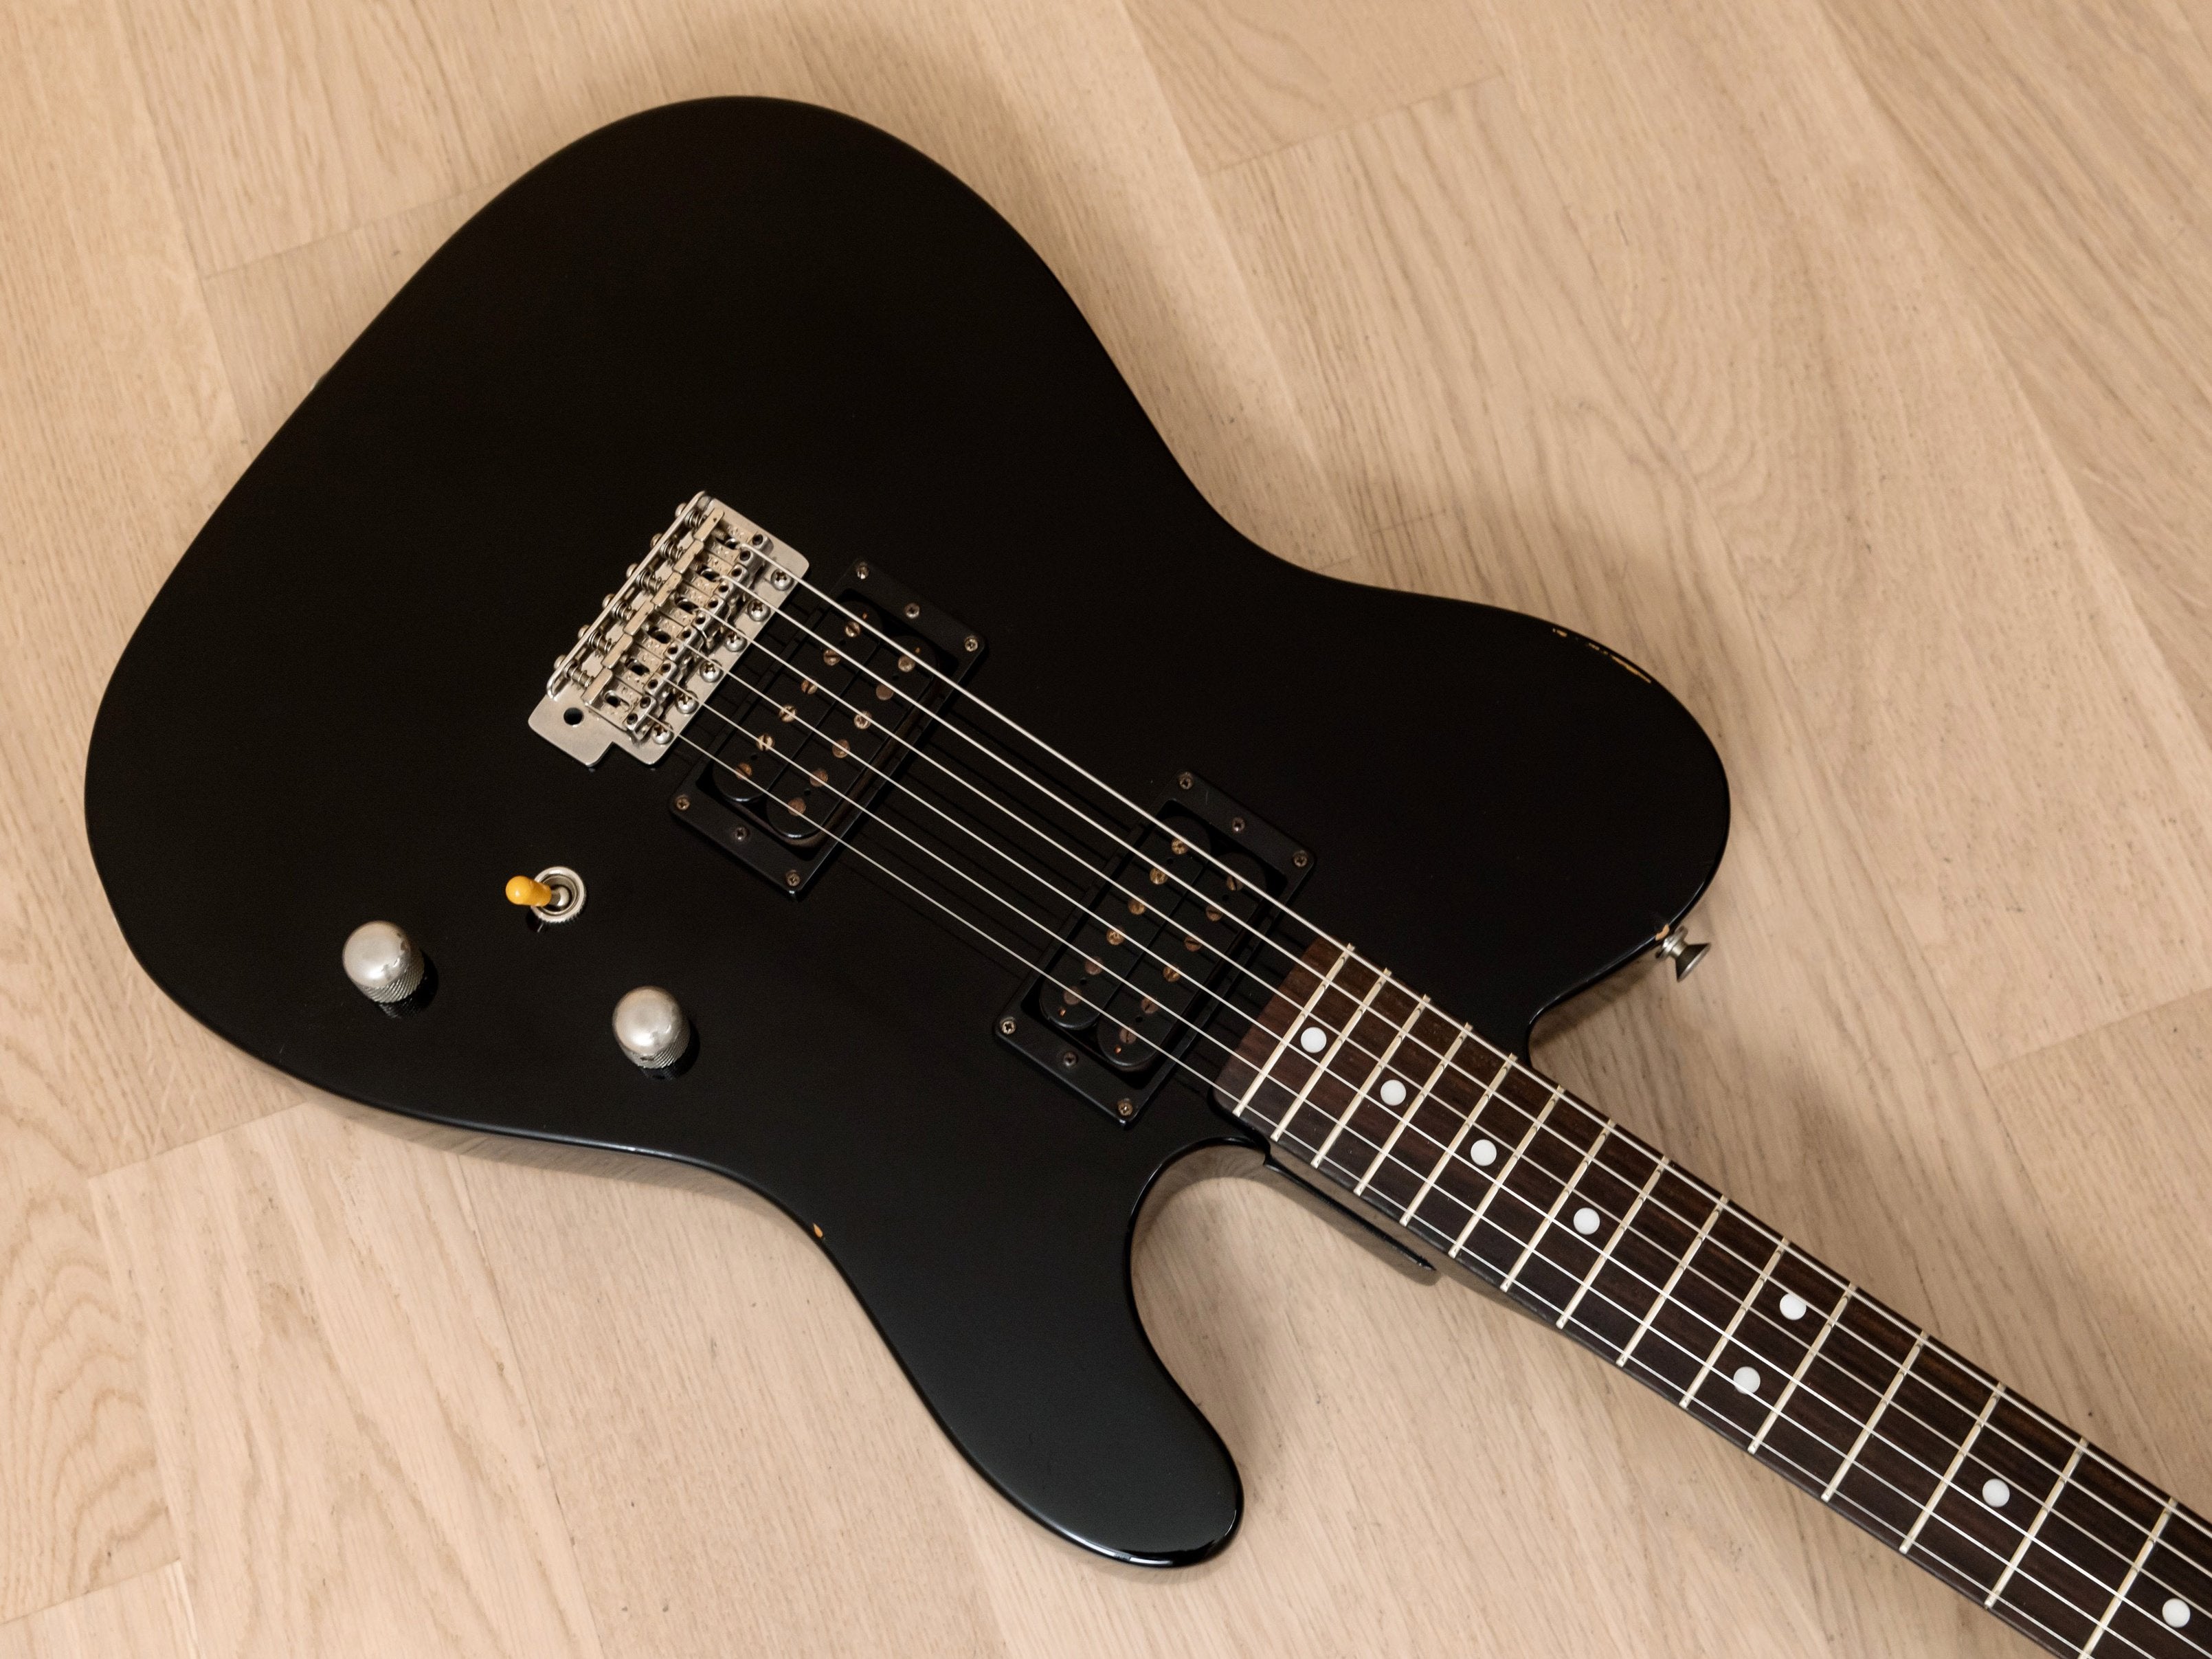 1982 Tokai Breezysound TE-60 HH T-Style Vintage Electric Guitar Black, Non-Catalog w/ Vibrato, Japan